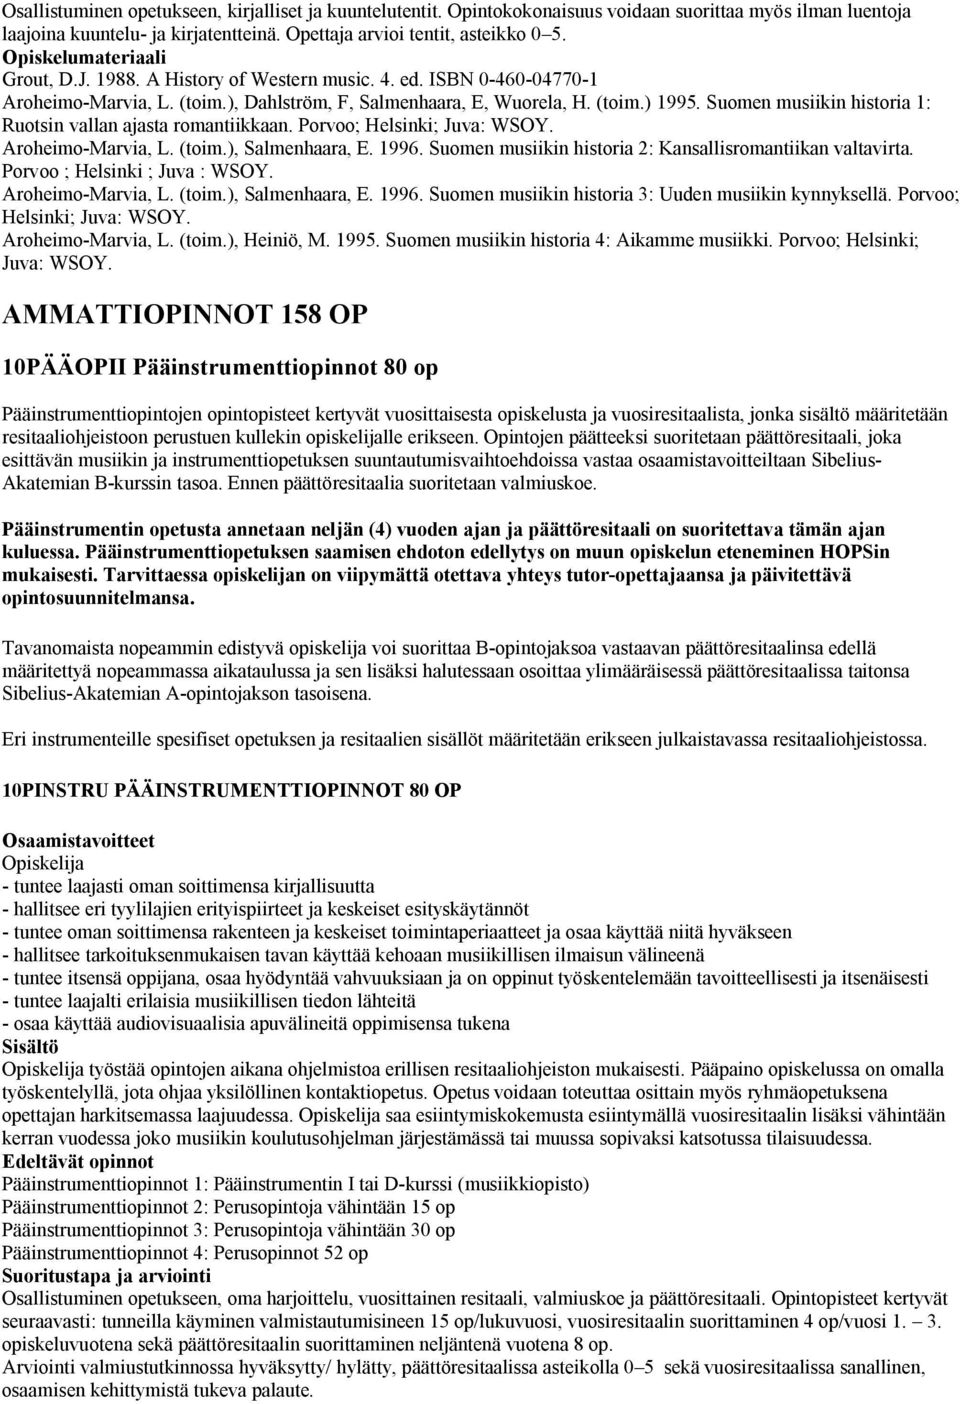 Suomen musiikin historia 1: Ruotsin vallan ajasta romantiikkaan. Porvoo; Helsinki; Juva: WSOY. Aroheimo-Marvia, L. (toim.), Salmenhaara, E. 1996.